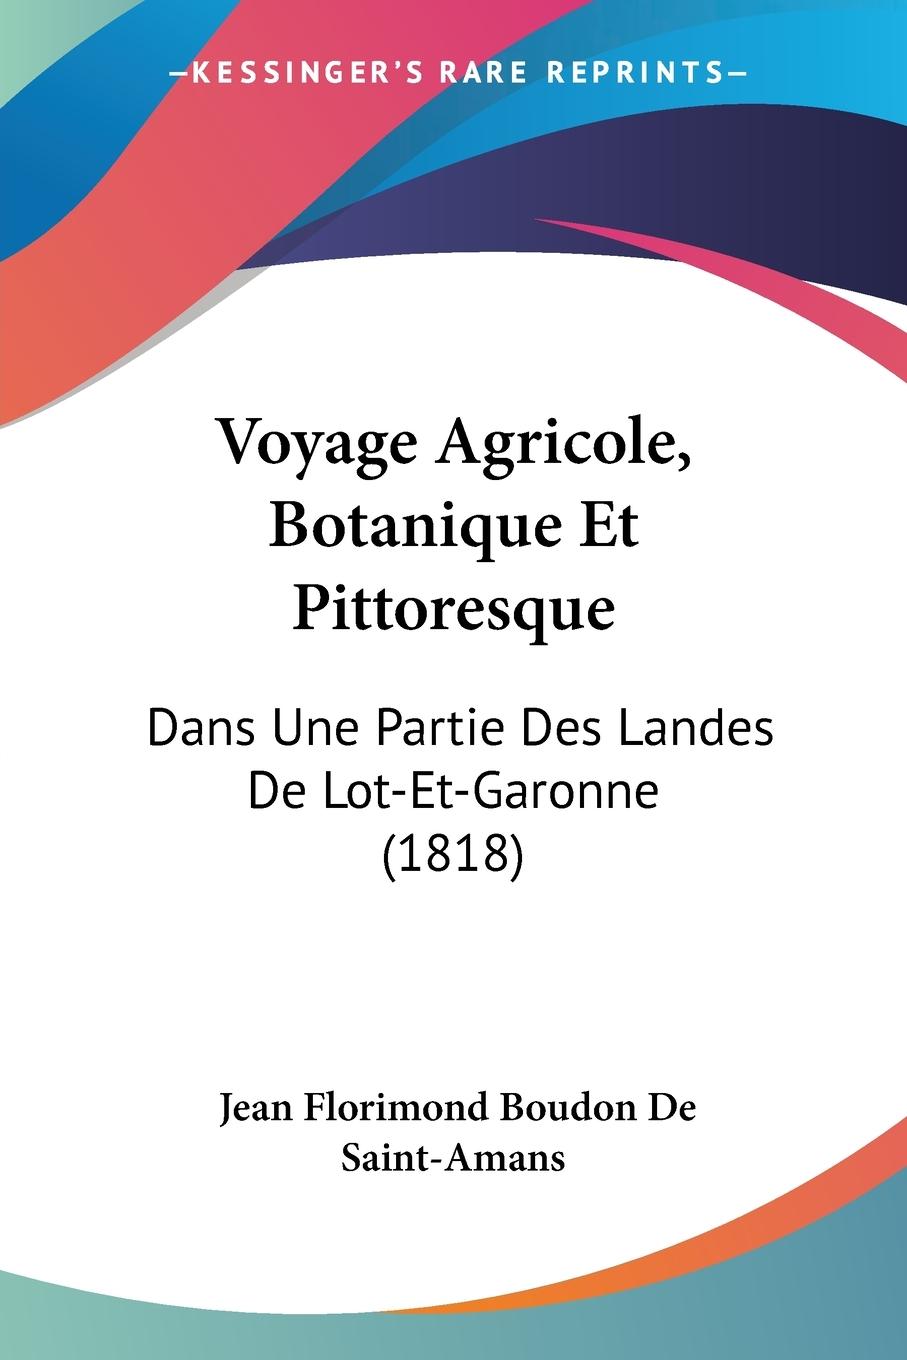 Voyage Agricole, Botanique Et Pittoresque - De Saint-Amans, Jean Florimond Boudon